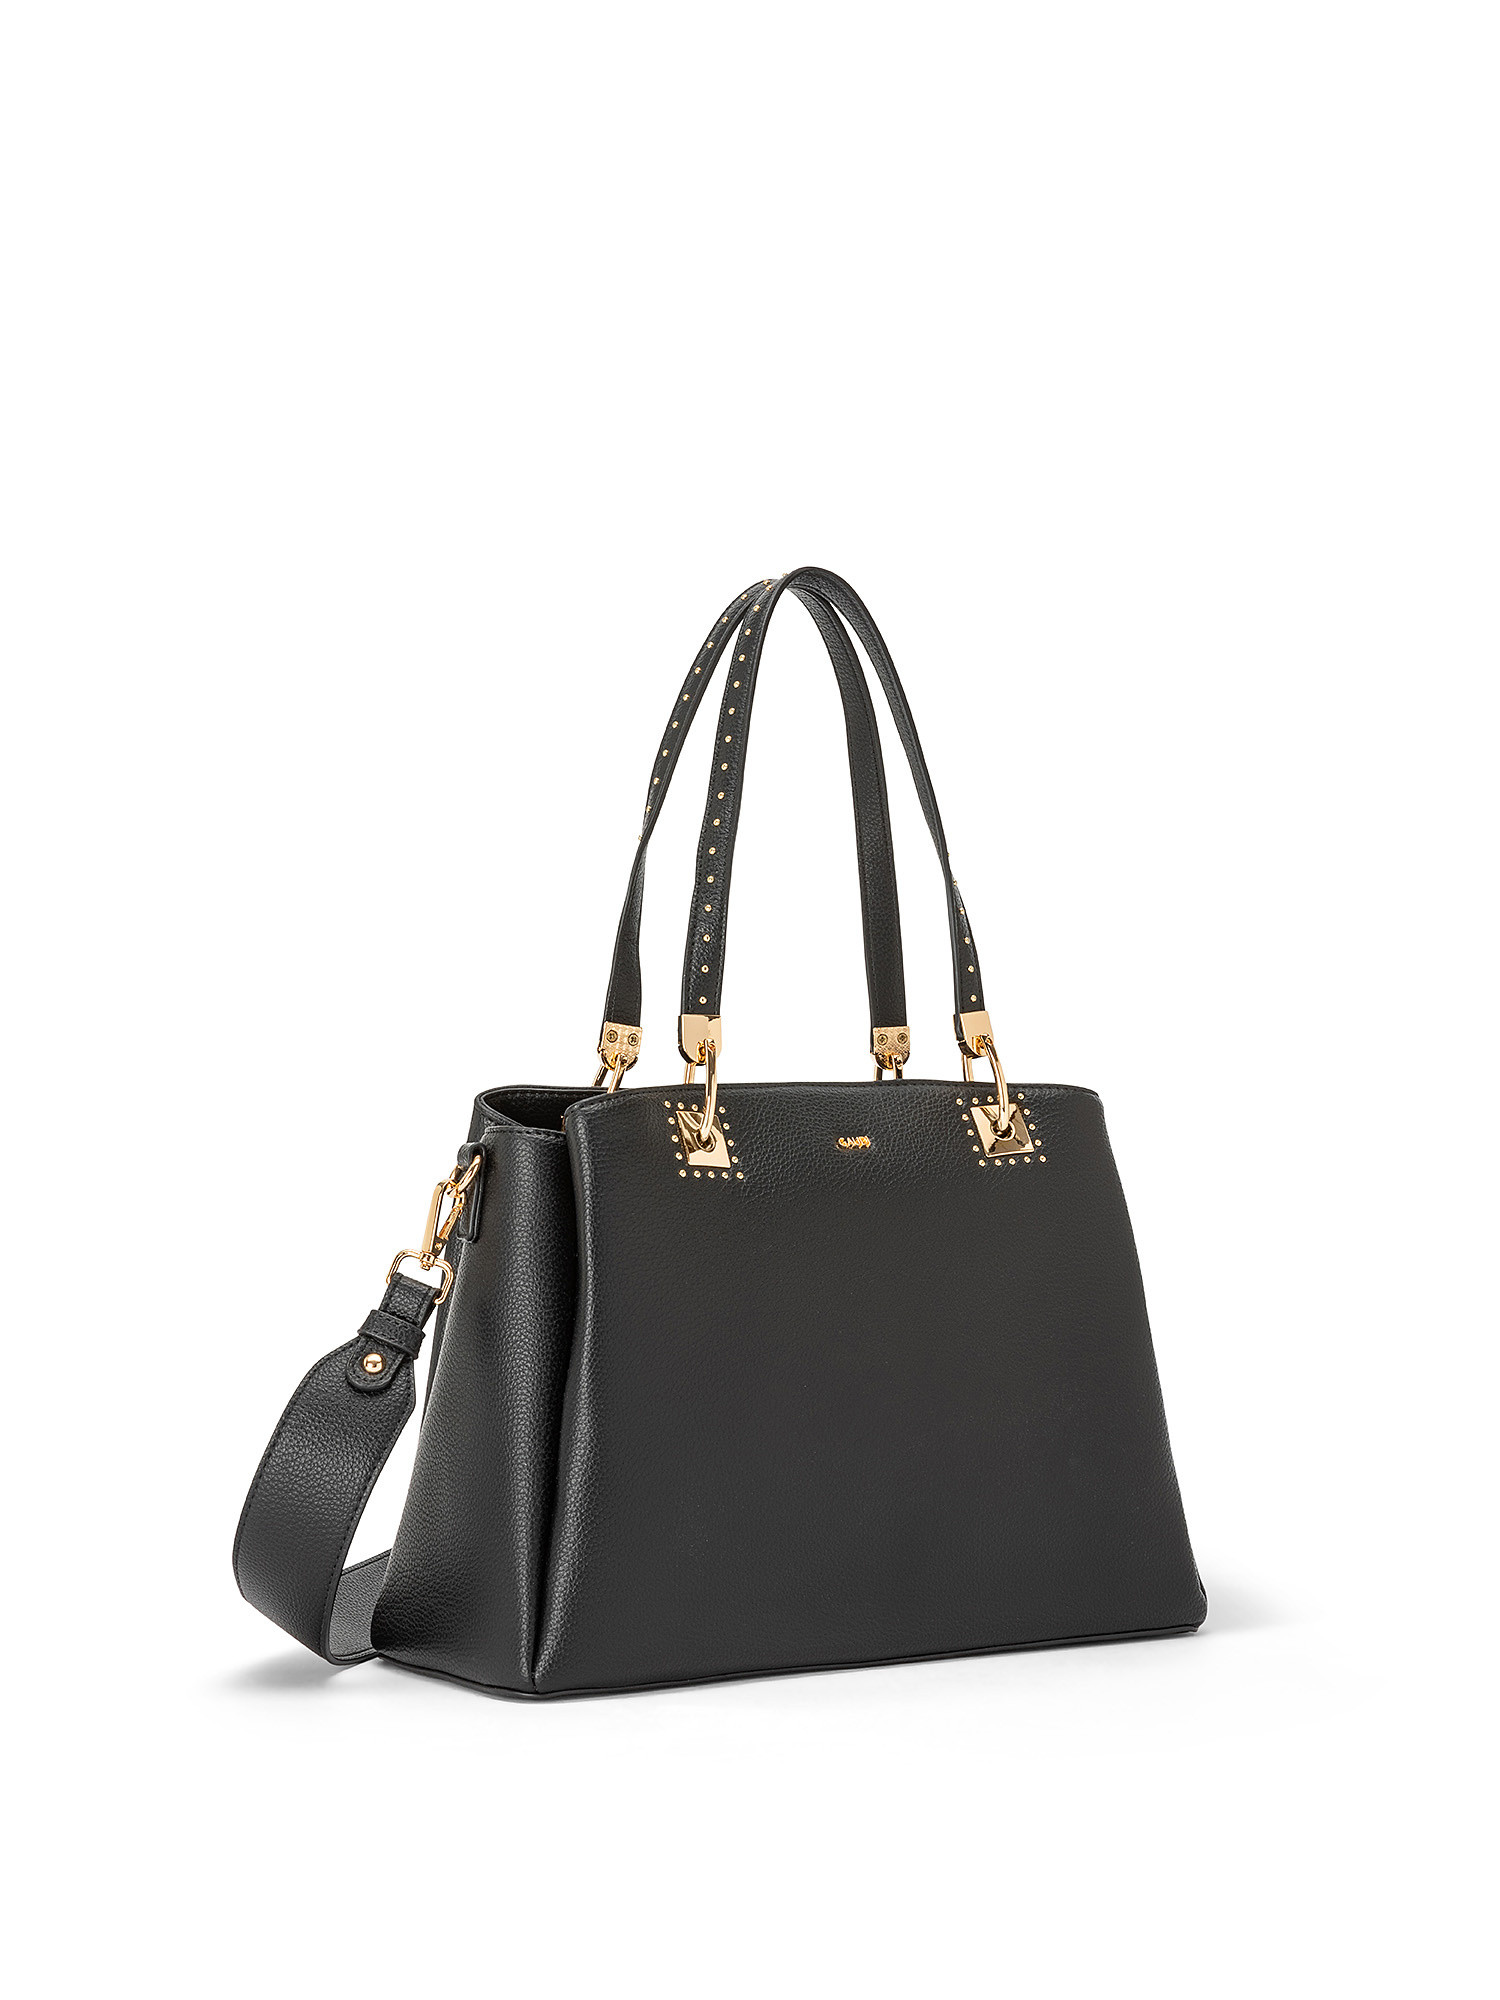 Gaudì - Shopping bag Aurora, Black, large image number 1